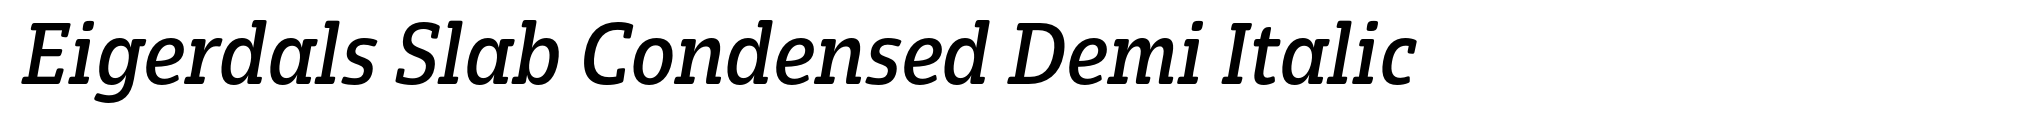 Eigerdals Slab Condensed Demi Italic image